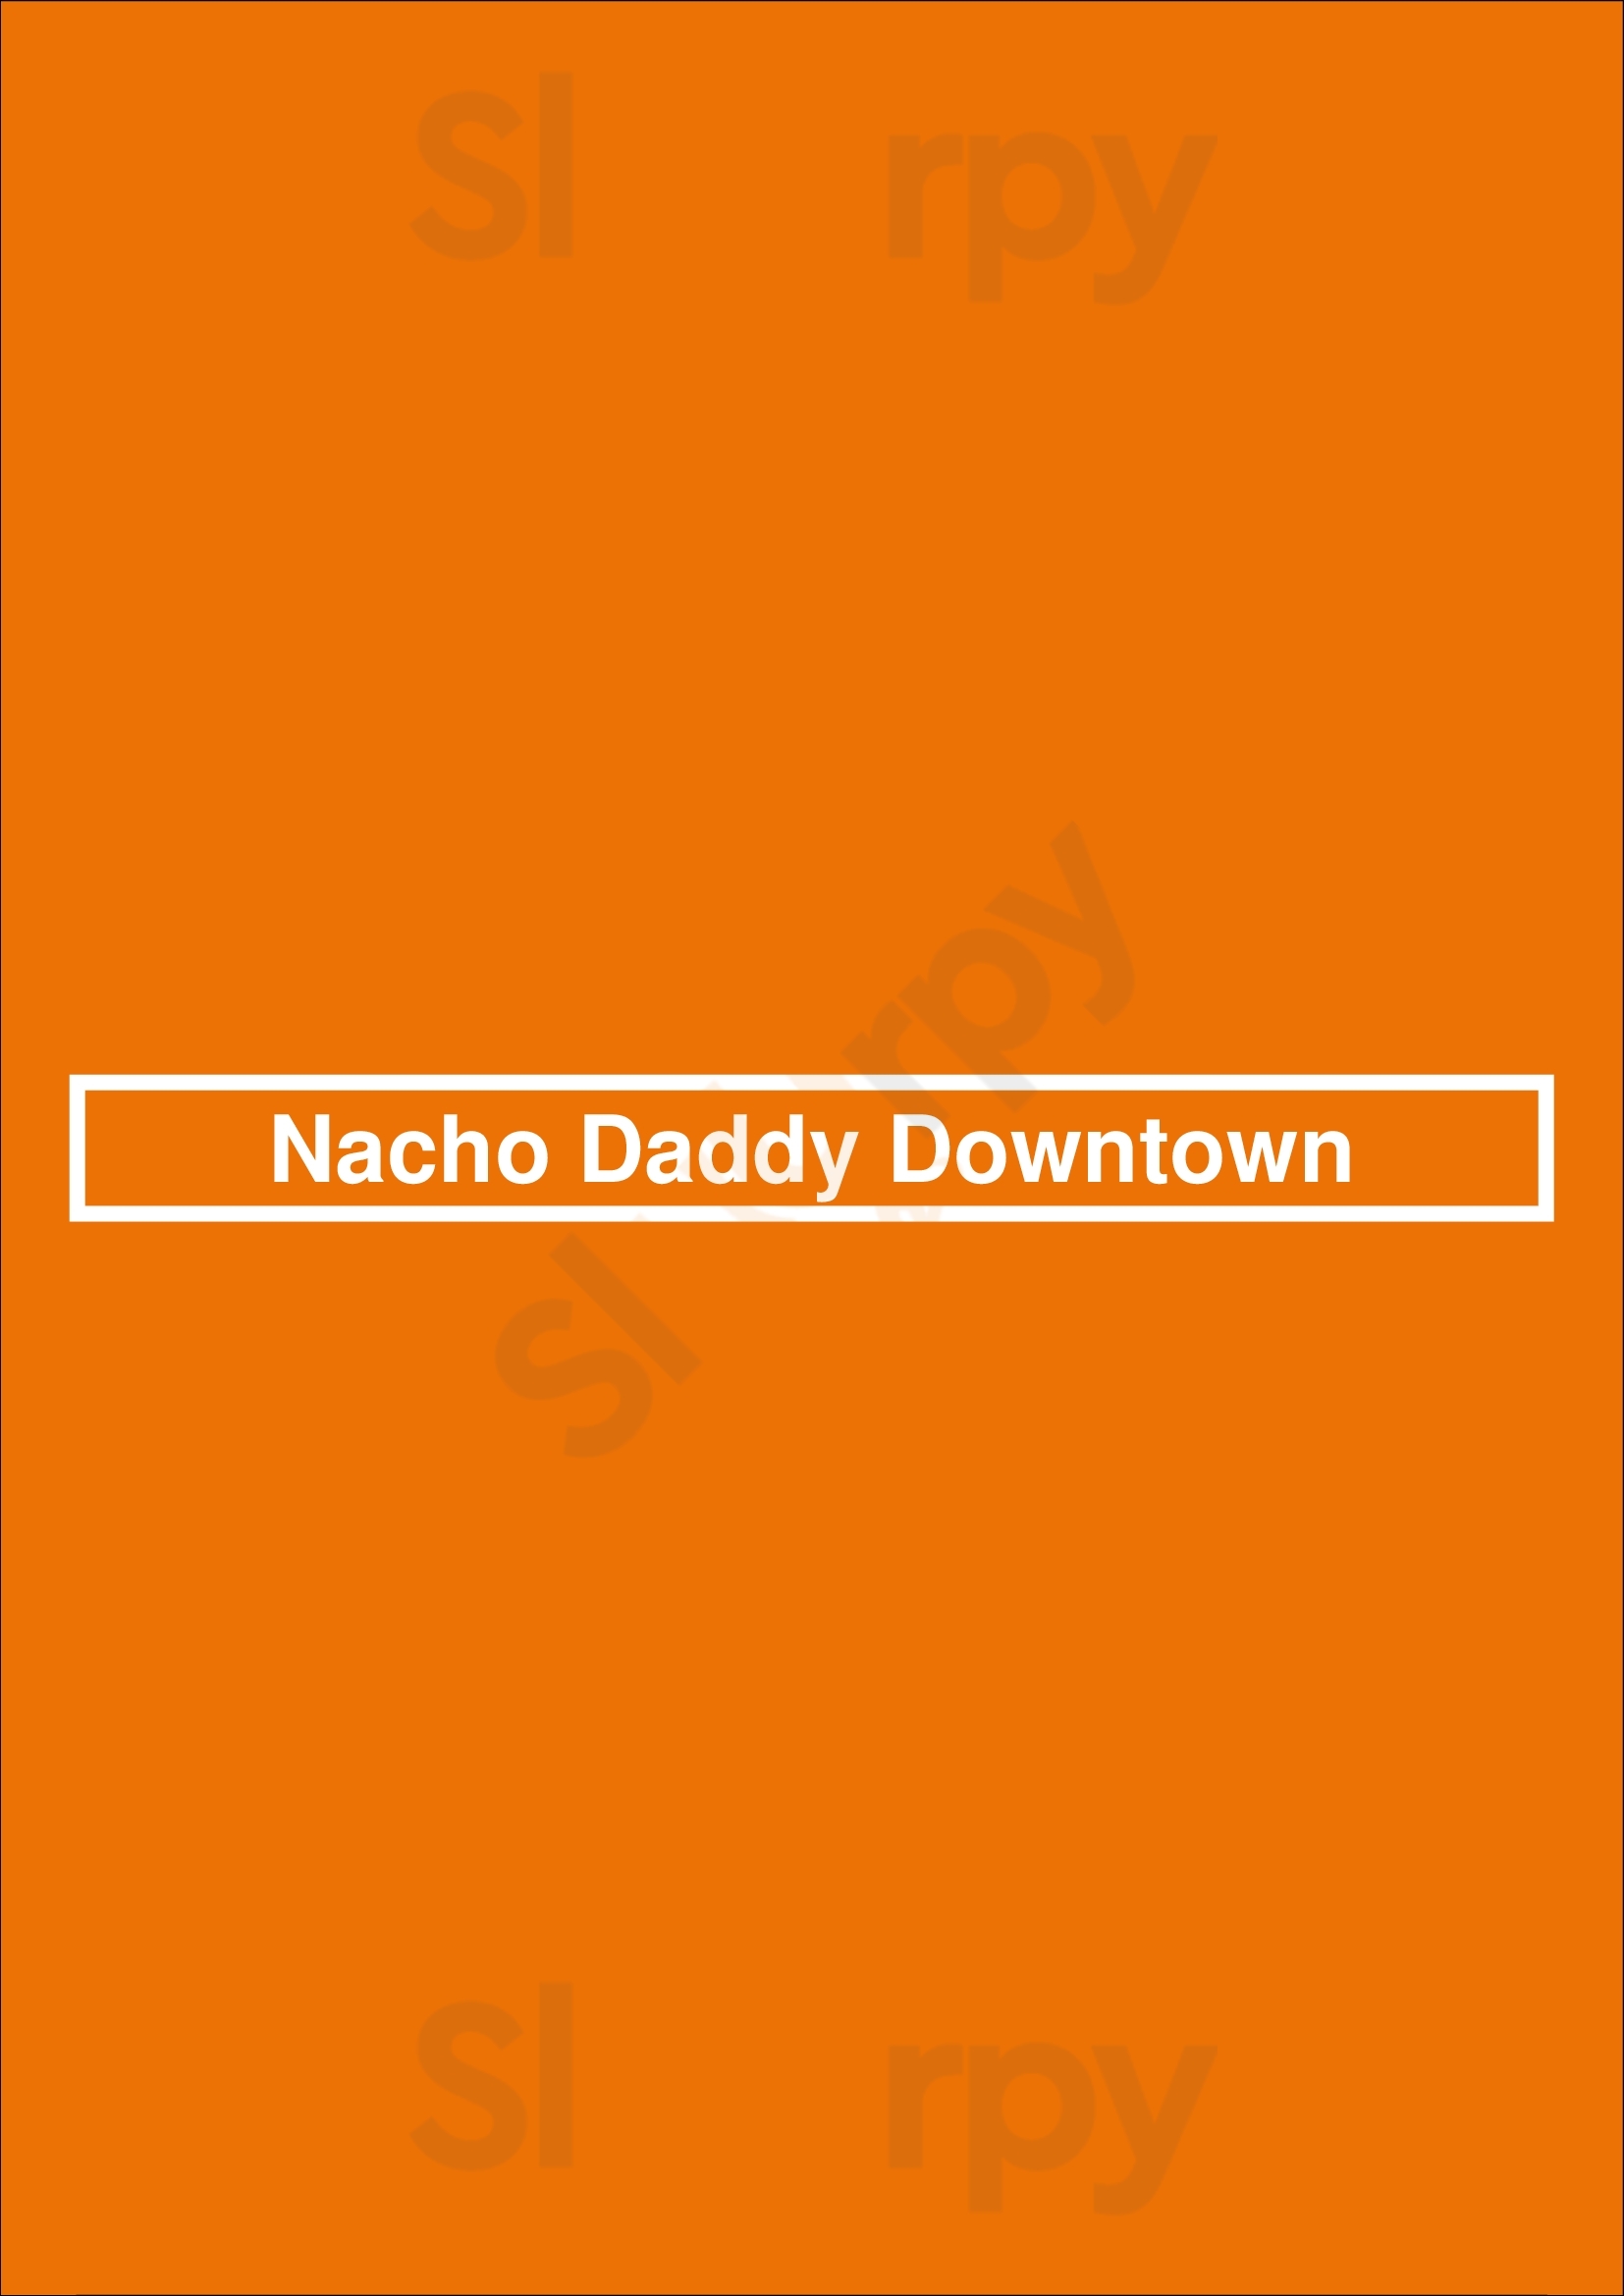 Nacho Daddy Downtown Las Vegas Menu - 1